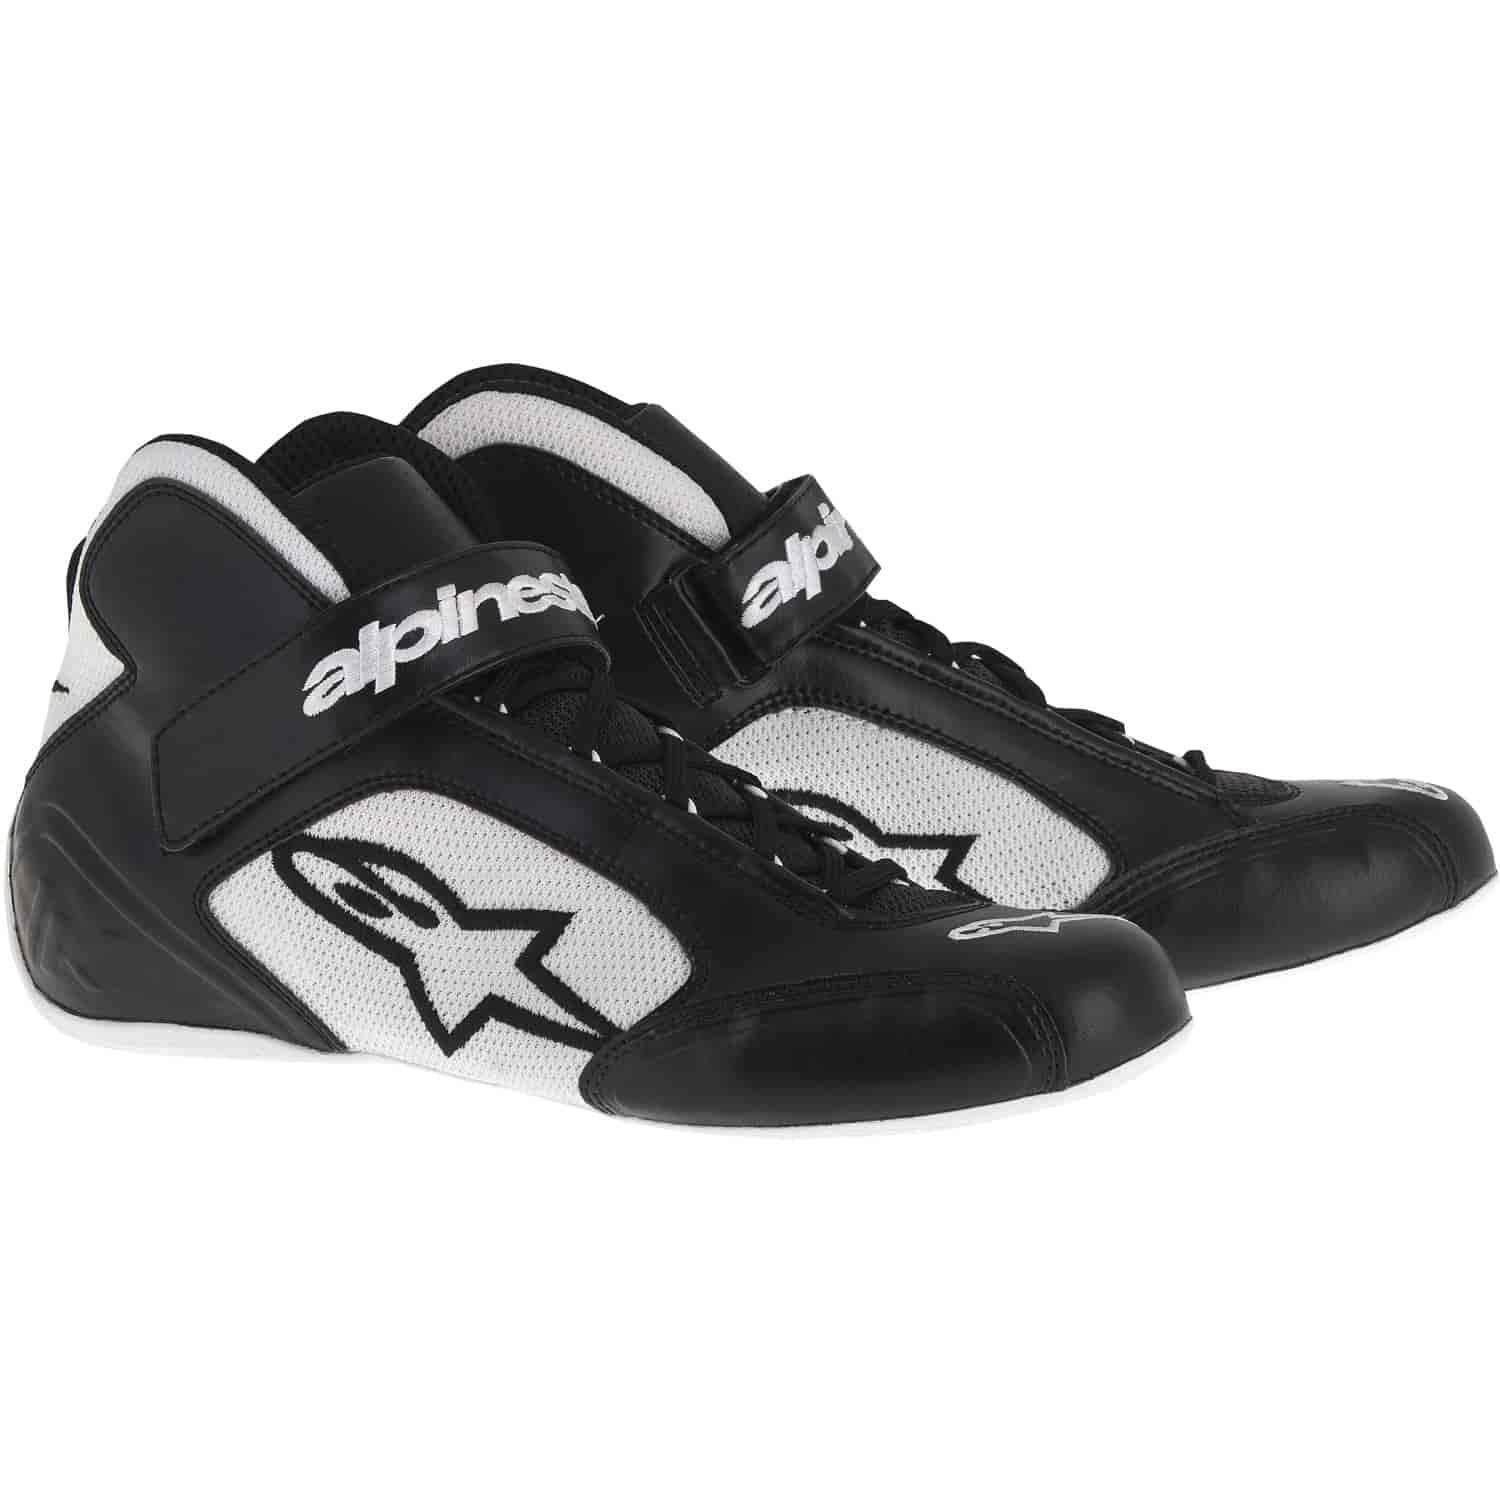 Tech 1-K Shoes Black/White